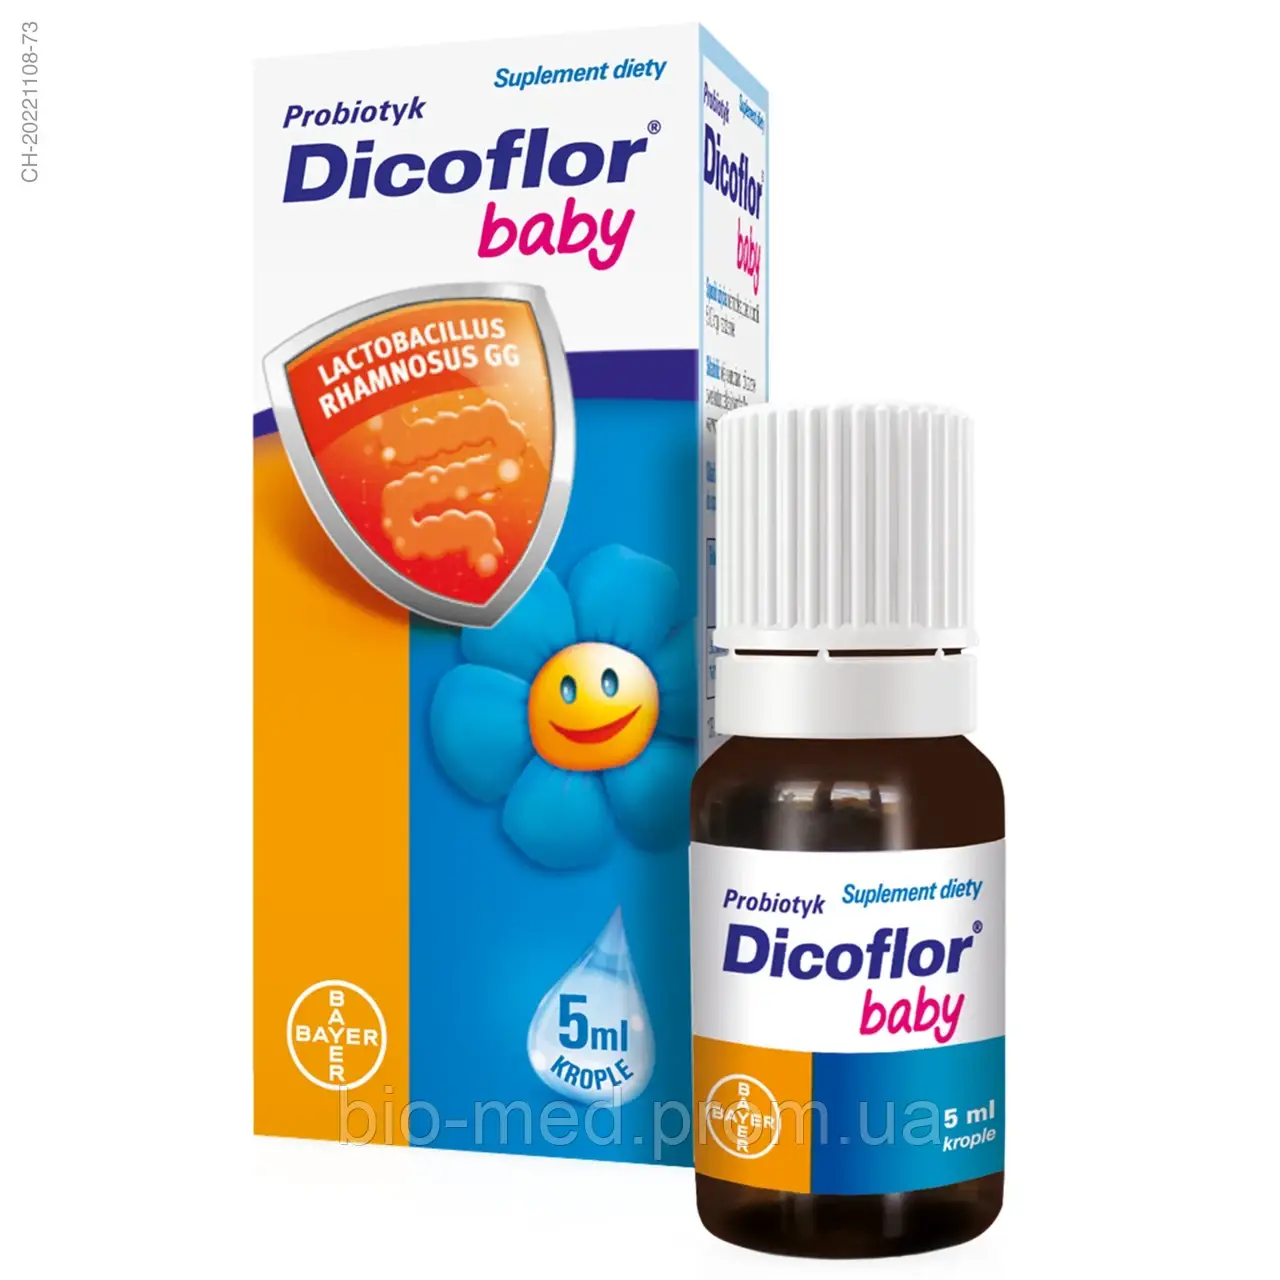 Dicoflor baby — пробіотик, краплі для доповнення раціону дітей із першого дня життя, 5 мл